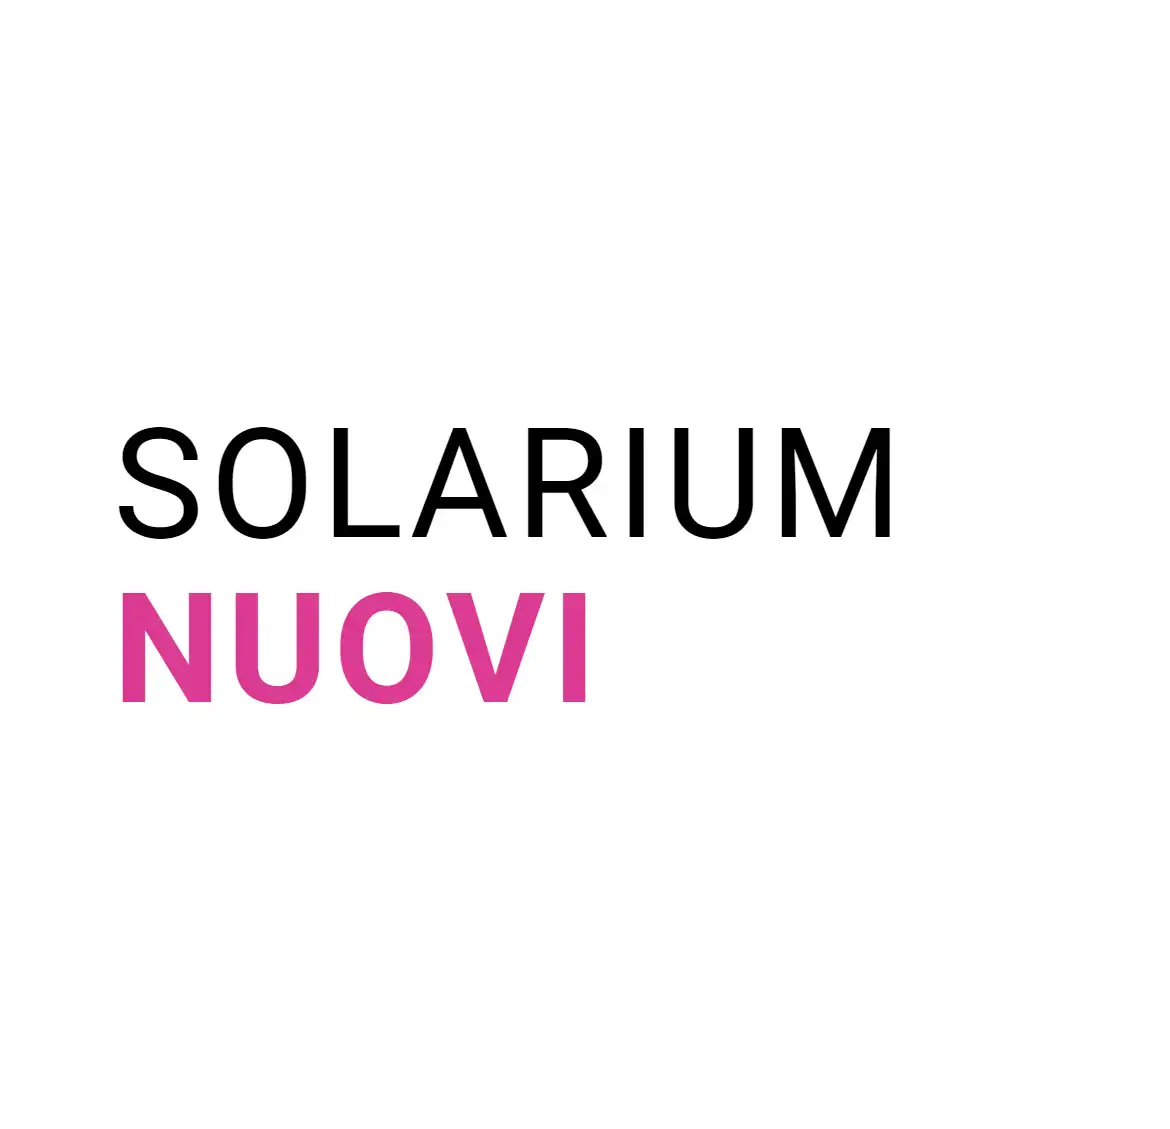 Solarium Nuovi UV4tan